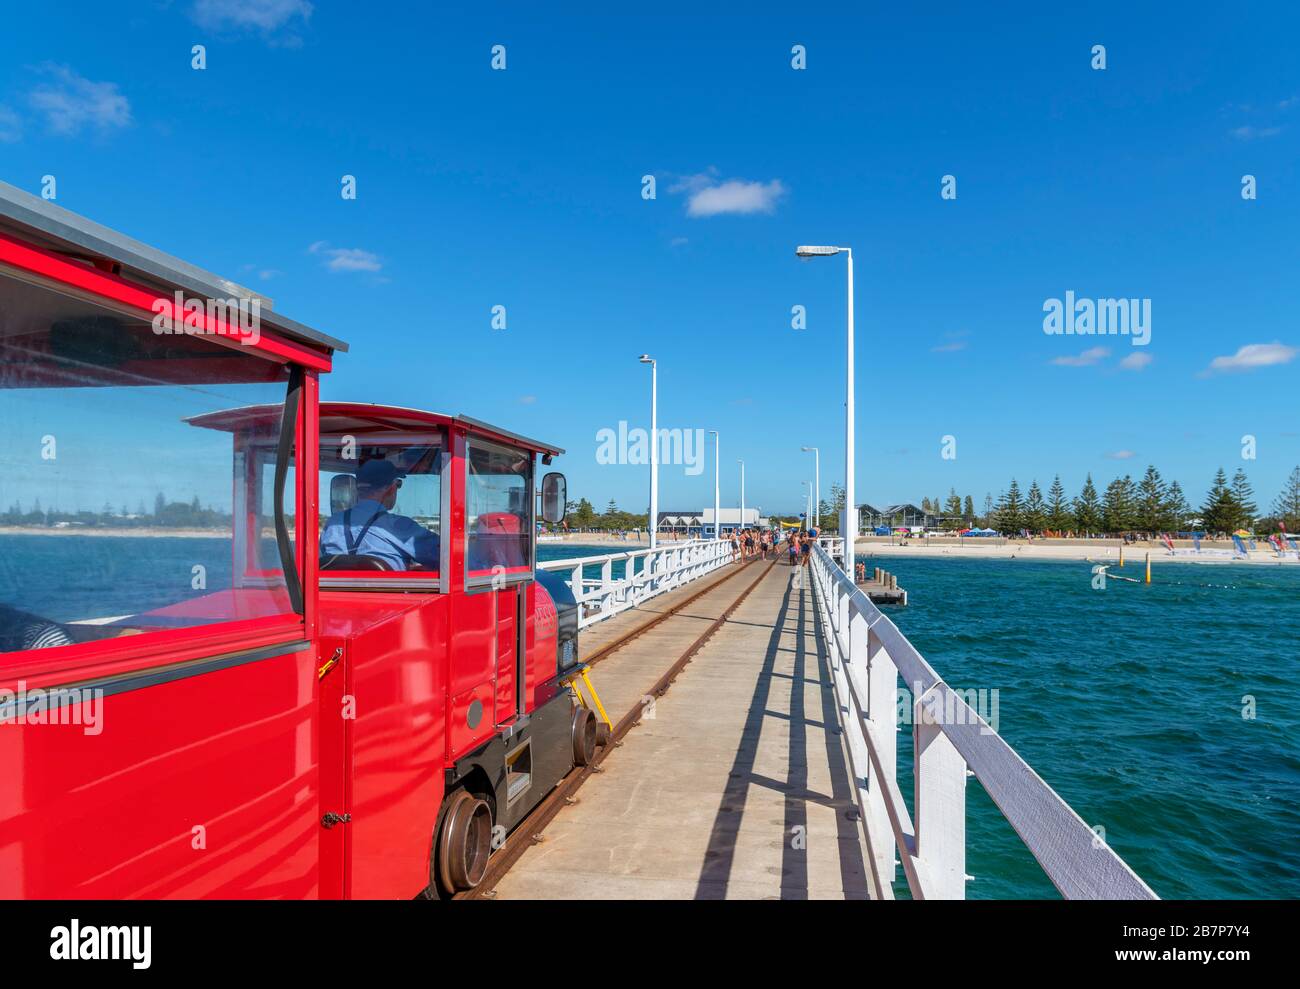 Il treno turistico Stockton Preston Express su Busselton Jetty, Busselton, Australia Occidentale, Australia Foto Stock